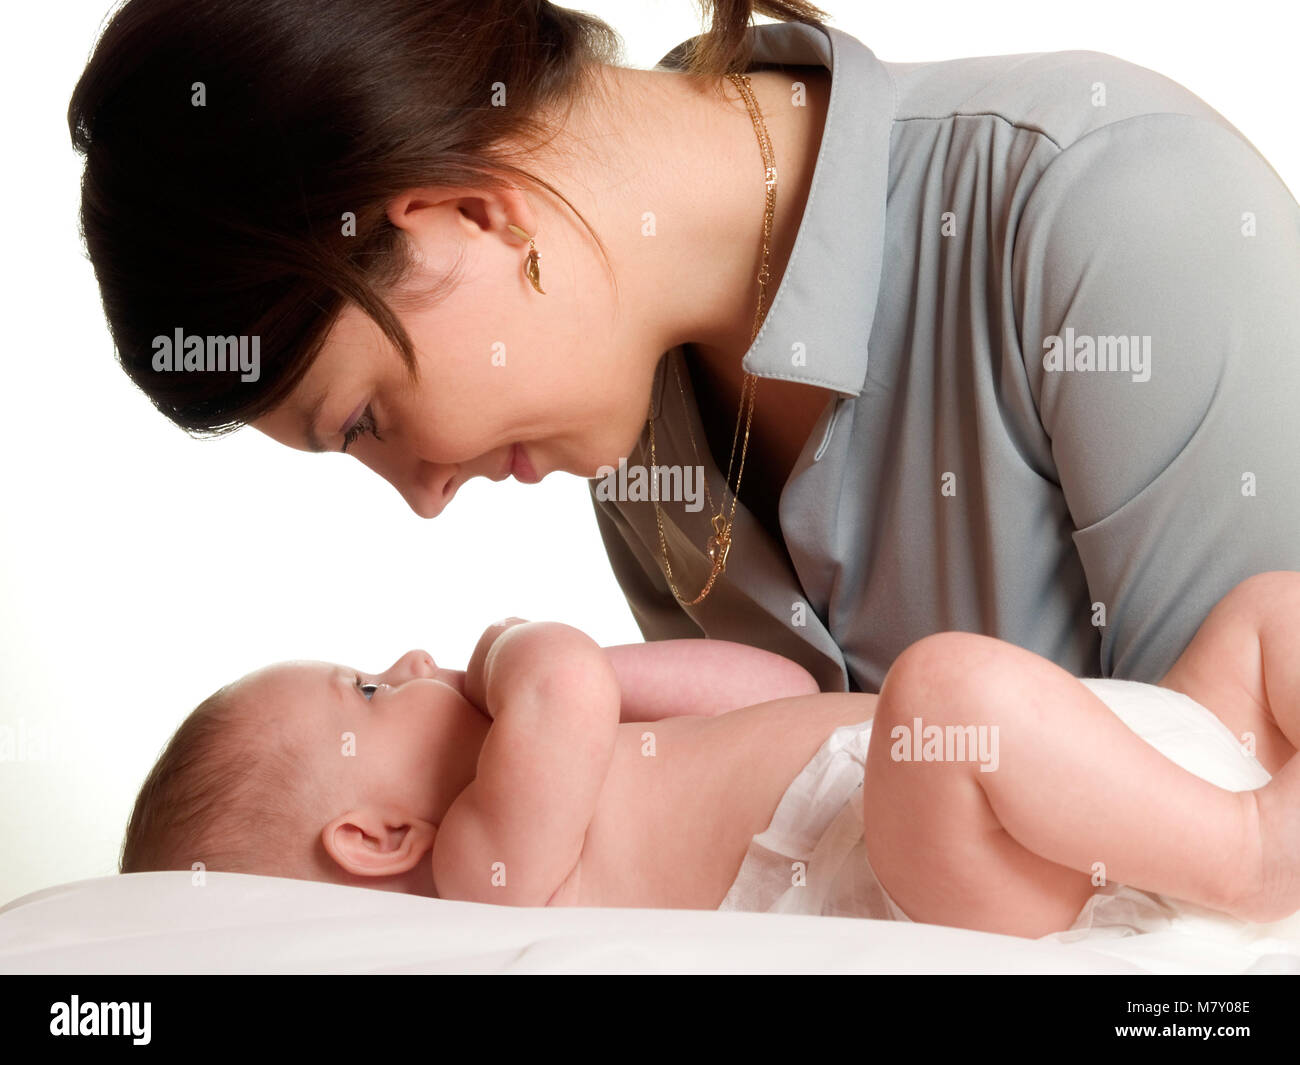 Mutter mit Baby auf isoliert weißer Hintergrund Stockfoto